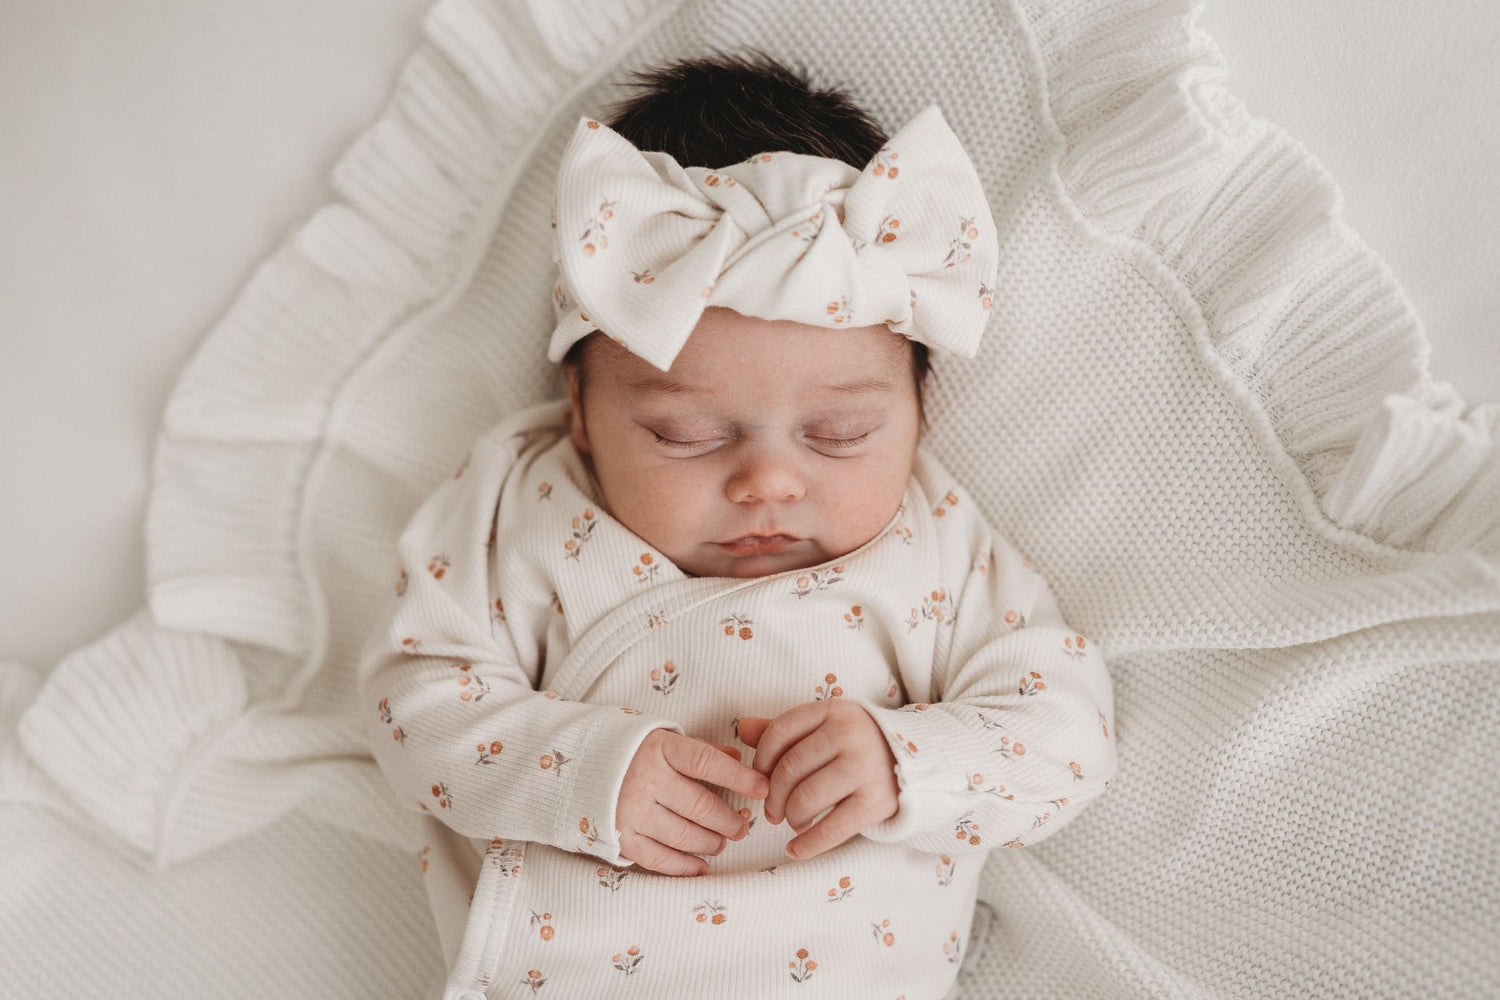 Serene slaap: een schattige baby gekleed in een gebloemde outfit met een bijpassende haarband Peach Blossom van Yumi Baby slaapt vredig op een zachte, gegolfde deken.